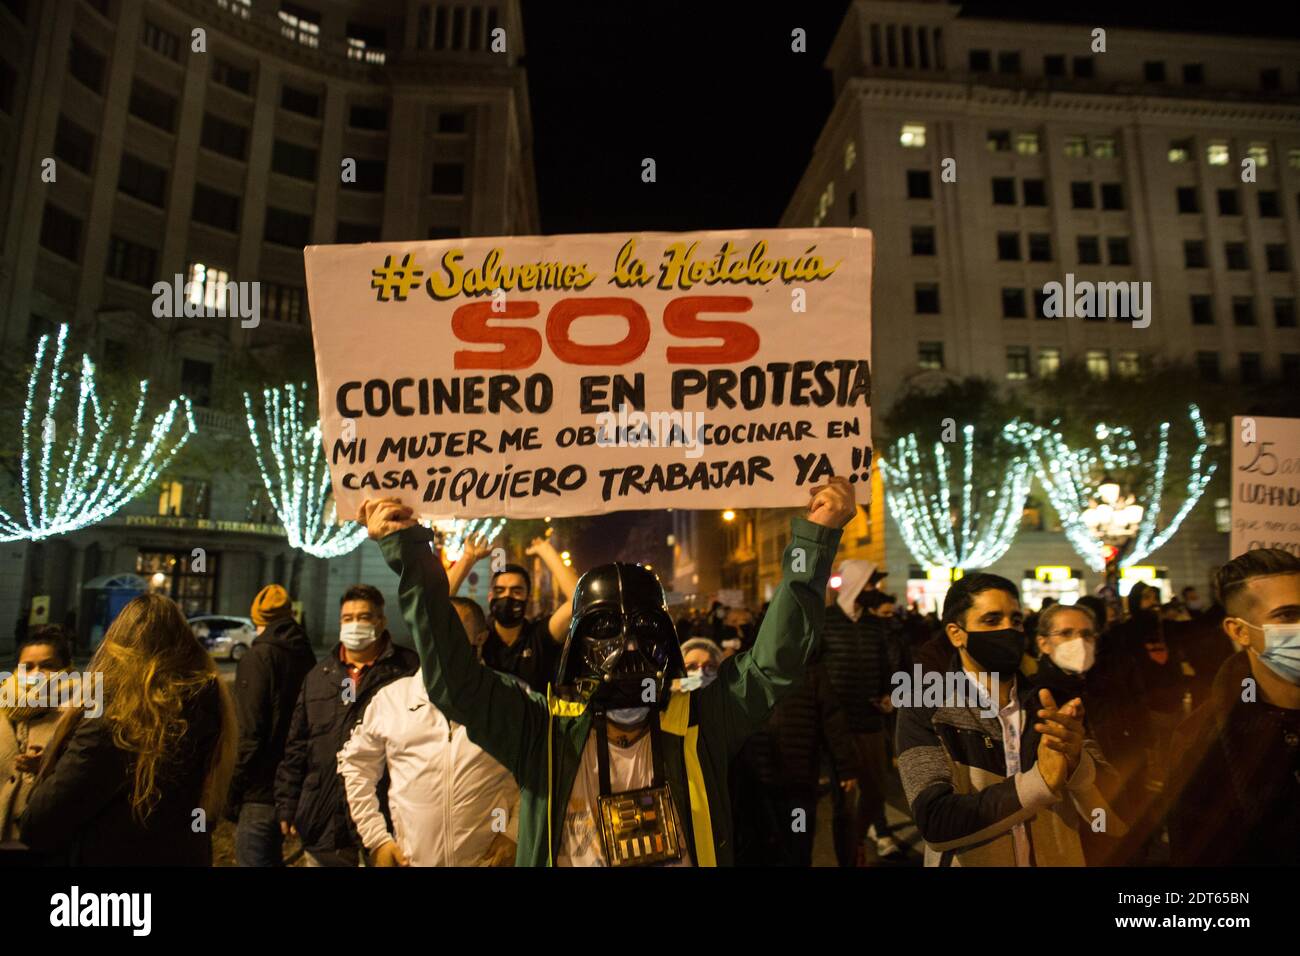 Barcelona, Katalonien, Spanien. Dezember 2020. Protestler mit einer Maske des Charakters Darth Vader, aus Star Wars, wird mit einem Banner, das sagt gesehen, Lasst uns die Gastfreundschaft SOS Koch aus Protest zu retten, meine Frau zwingt mich zu Hause kochen, Ich möchte jetzt arbeiten!.rund 800 katalanische Geschäftsleute und Arbeiter von Bars und Restaurants haben sich am Nachmittag des 21. Dezember in Barcelona konzentriert, um gegen die Beschränkungen zu protestieren, die die Regierung wegen Covid-19 nach der Beschränkung der Öffnung in der Nacht angewandt hat. Quelle: Thiago Prudencio/DAX/ZUMA Wire/Alamy Live News Stockfoto